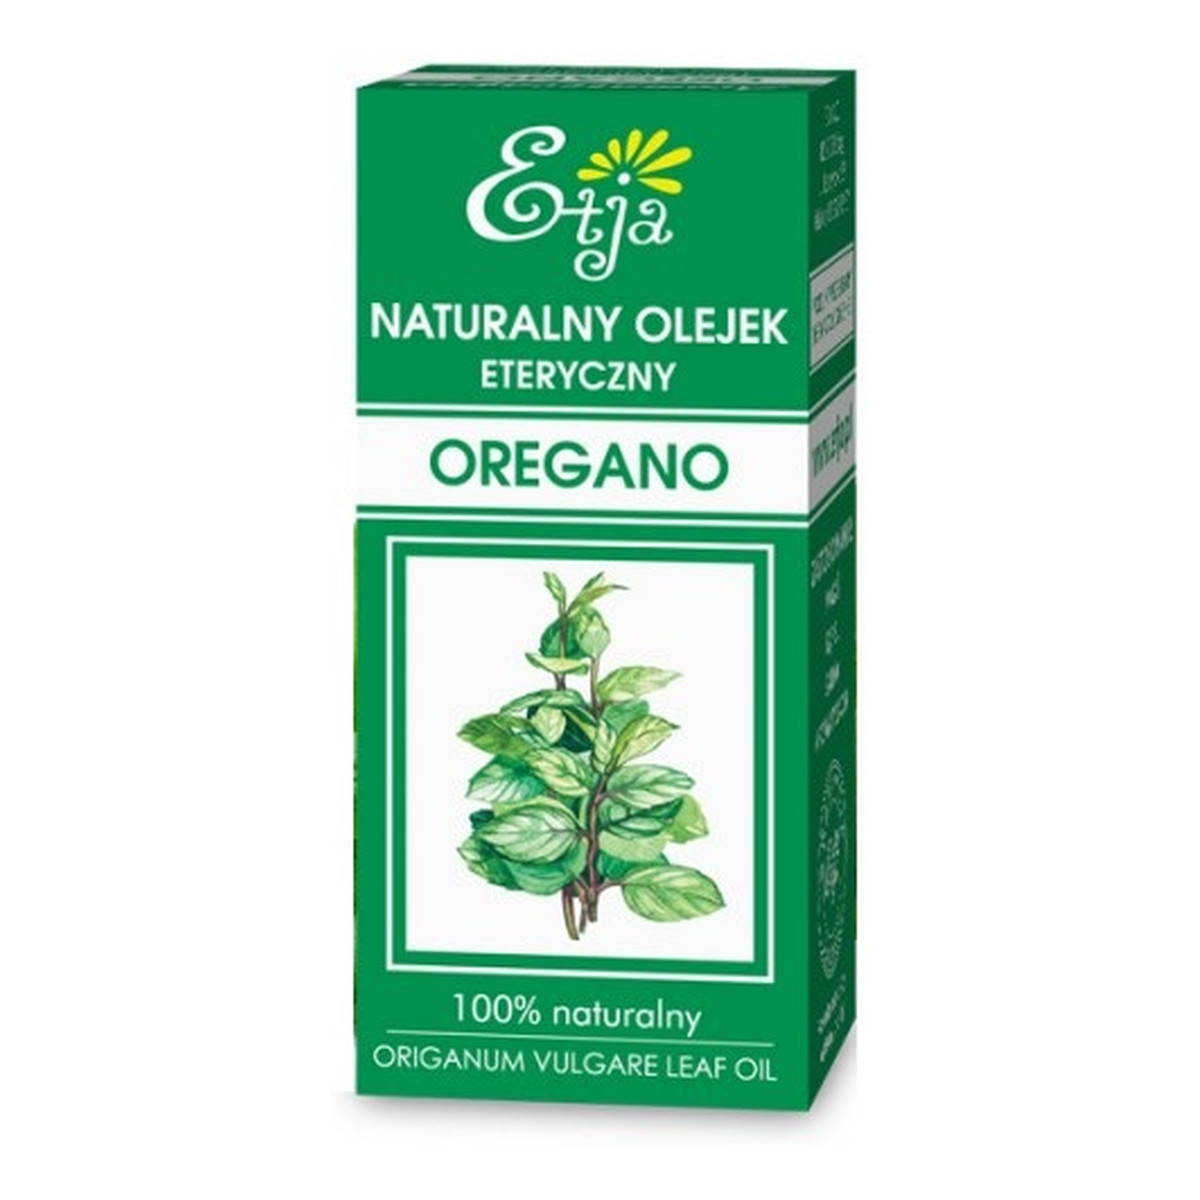 Etja Oregano Naturalny olejek eteryczny 10ml